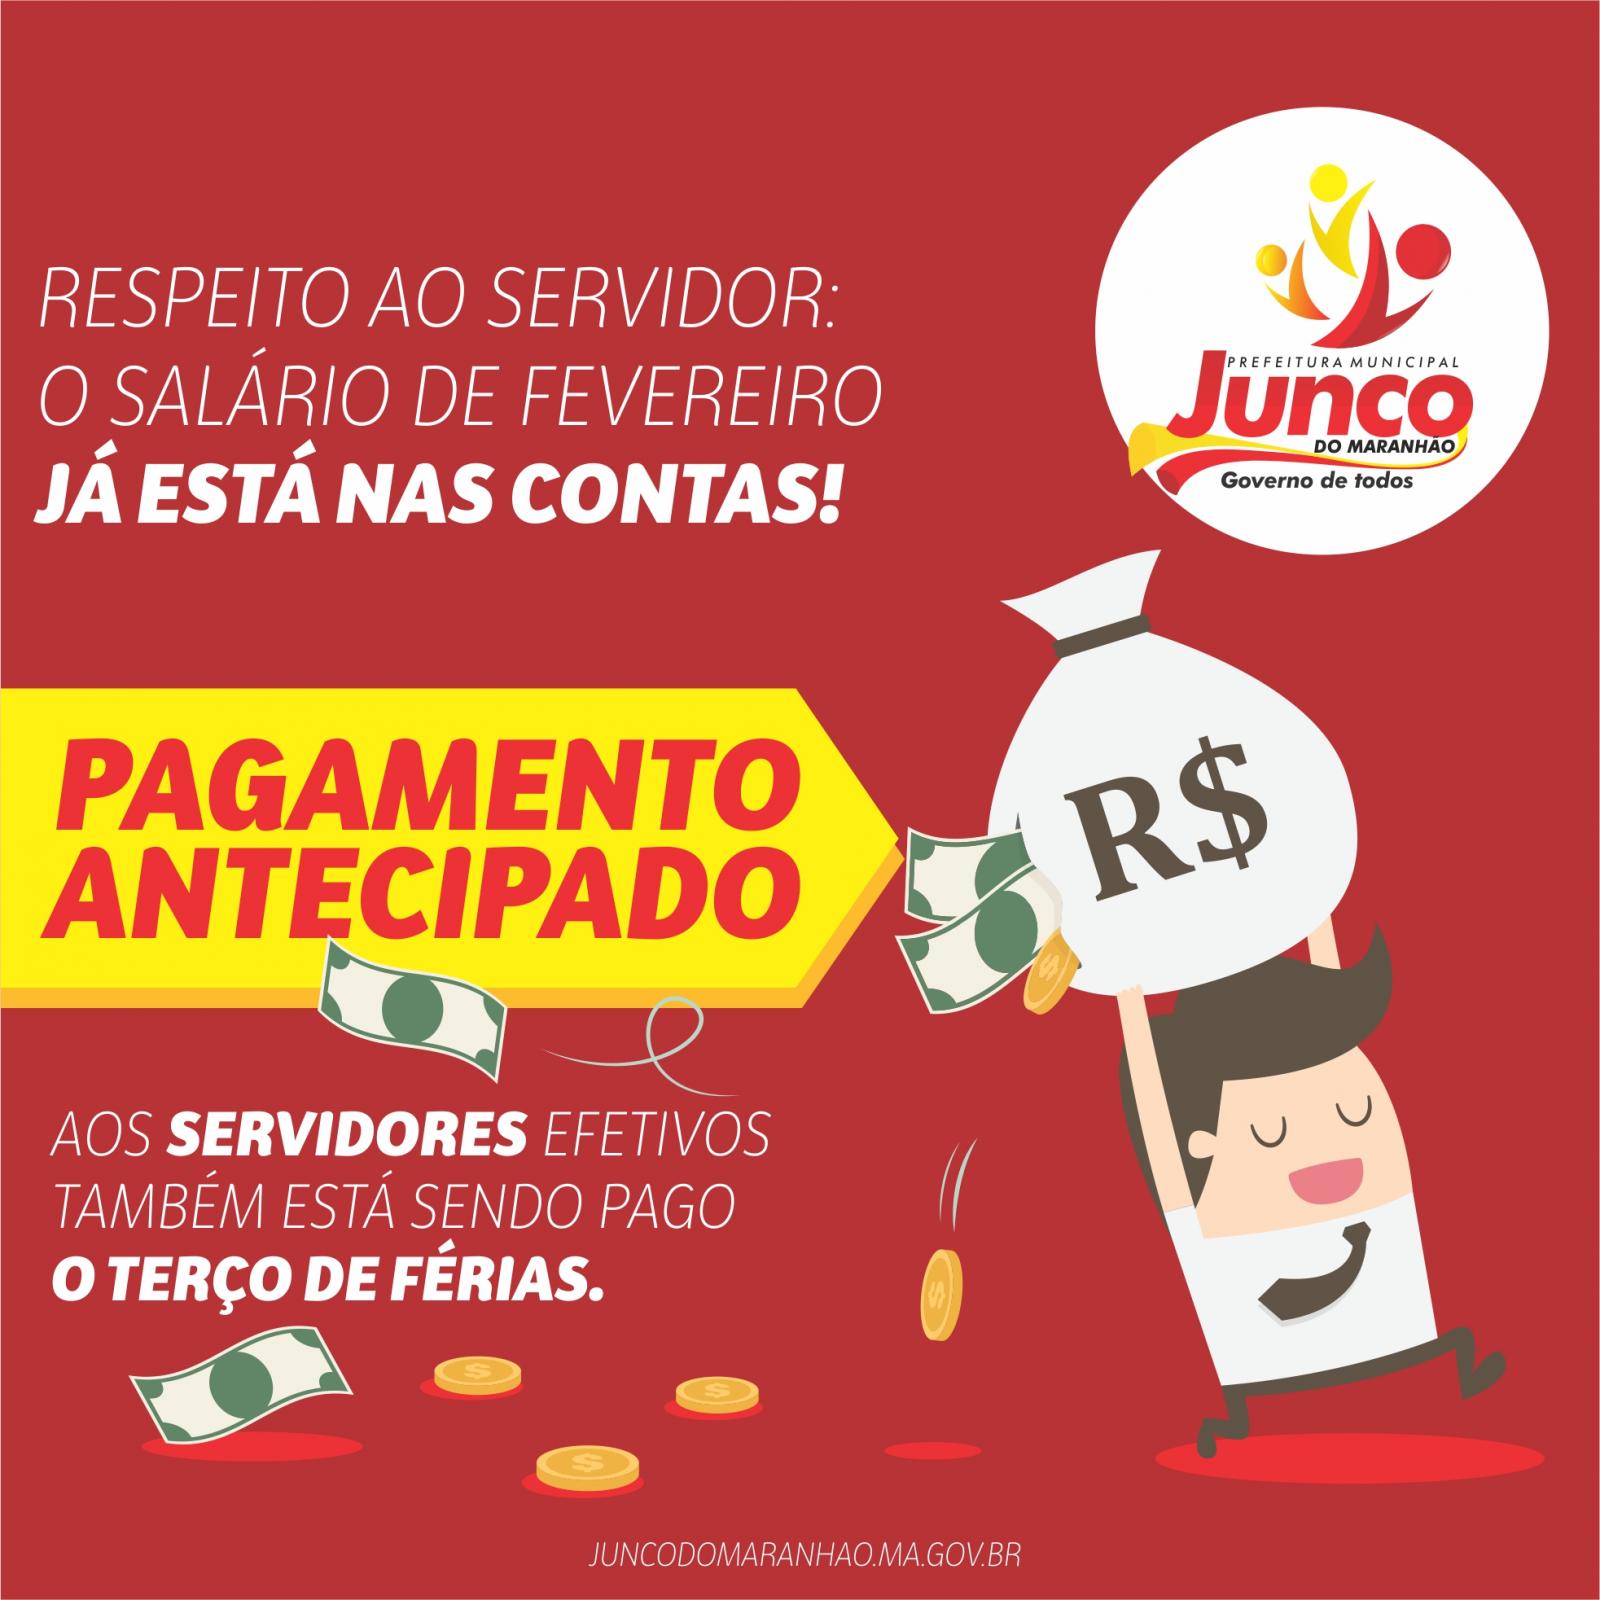 DINHEIRO NAS CONTAS: Prefeito Antonio Filho determinou o pagamento de todos os funcionários com terço de férias para efetivos